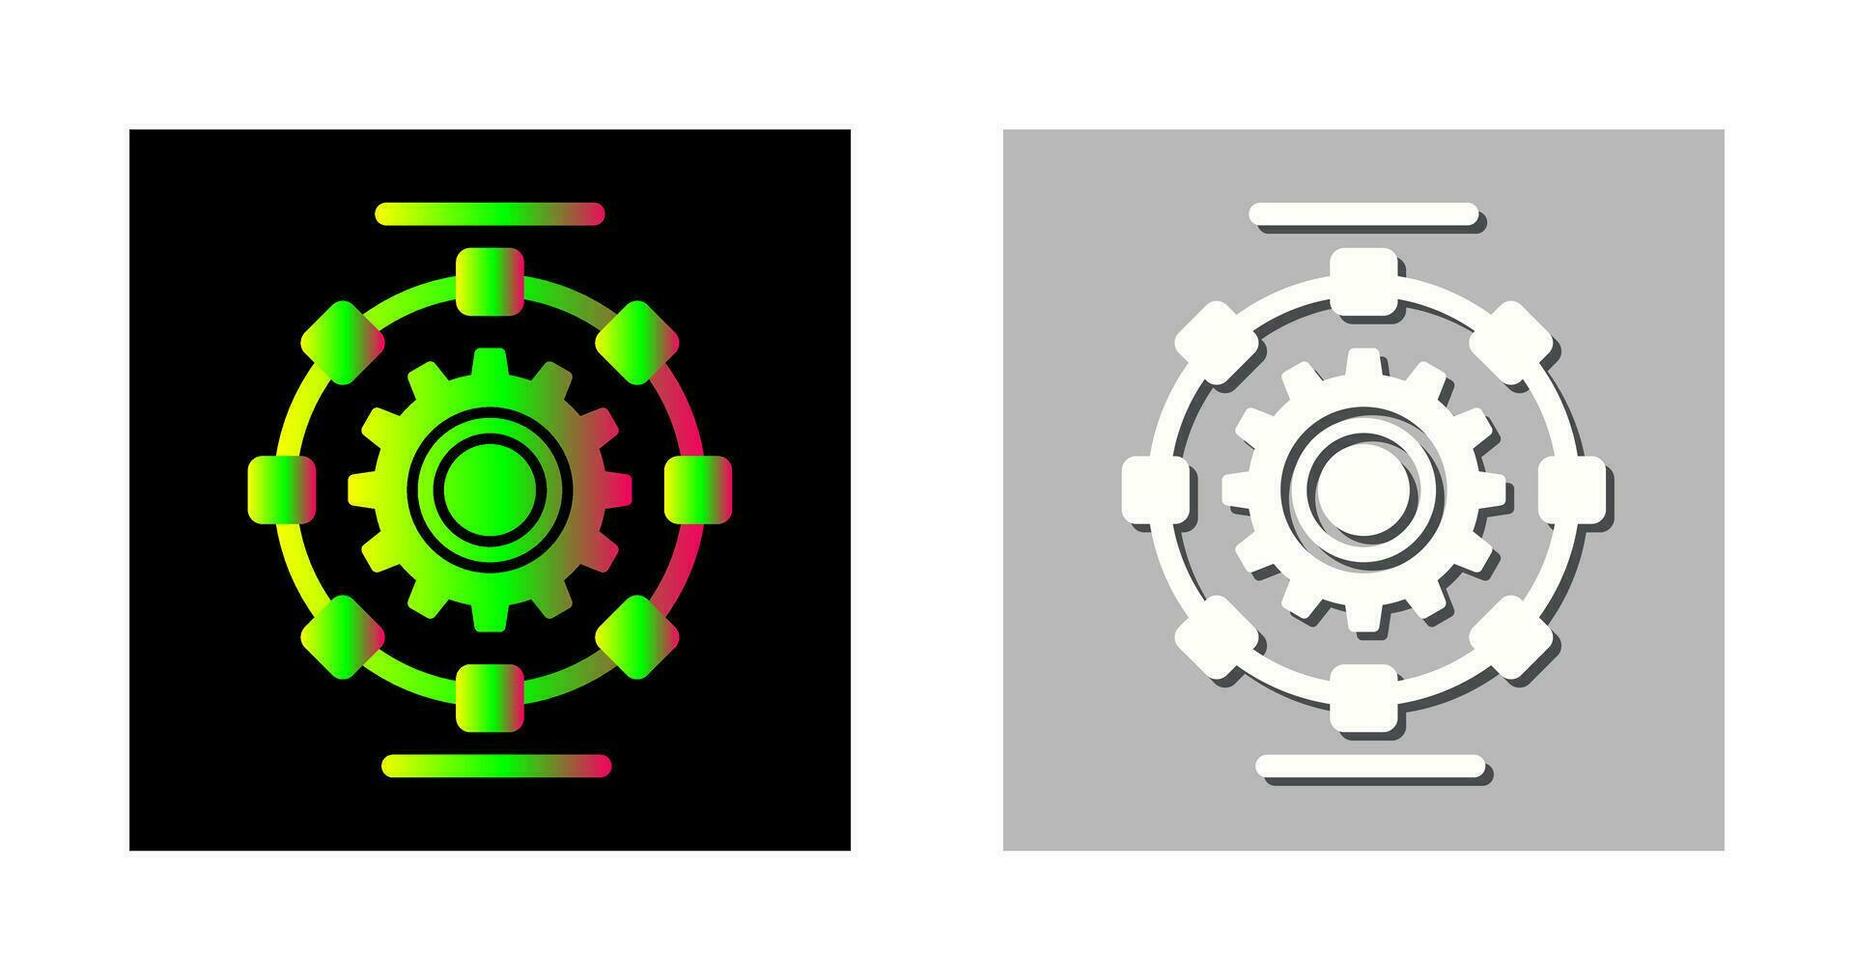 ícone de vetor de processo automatizado